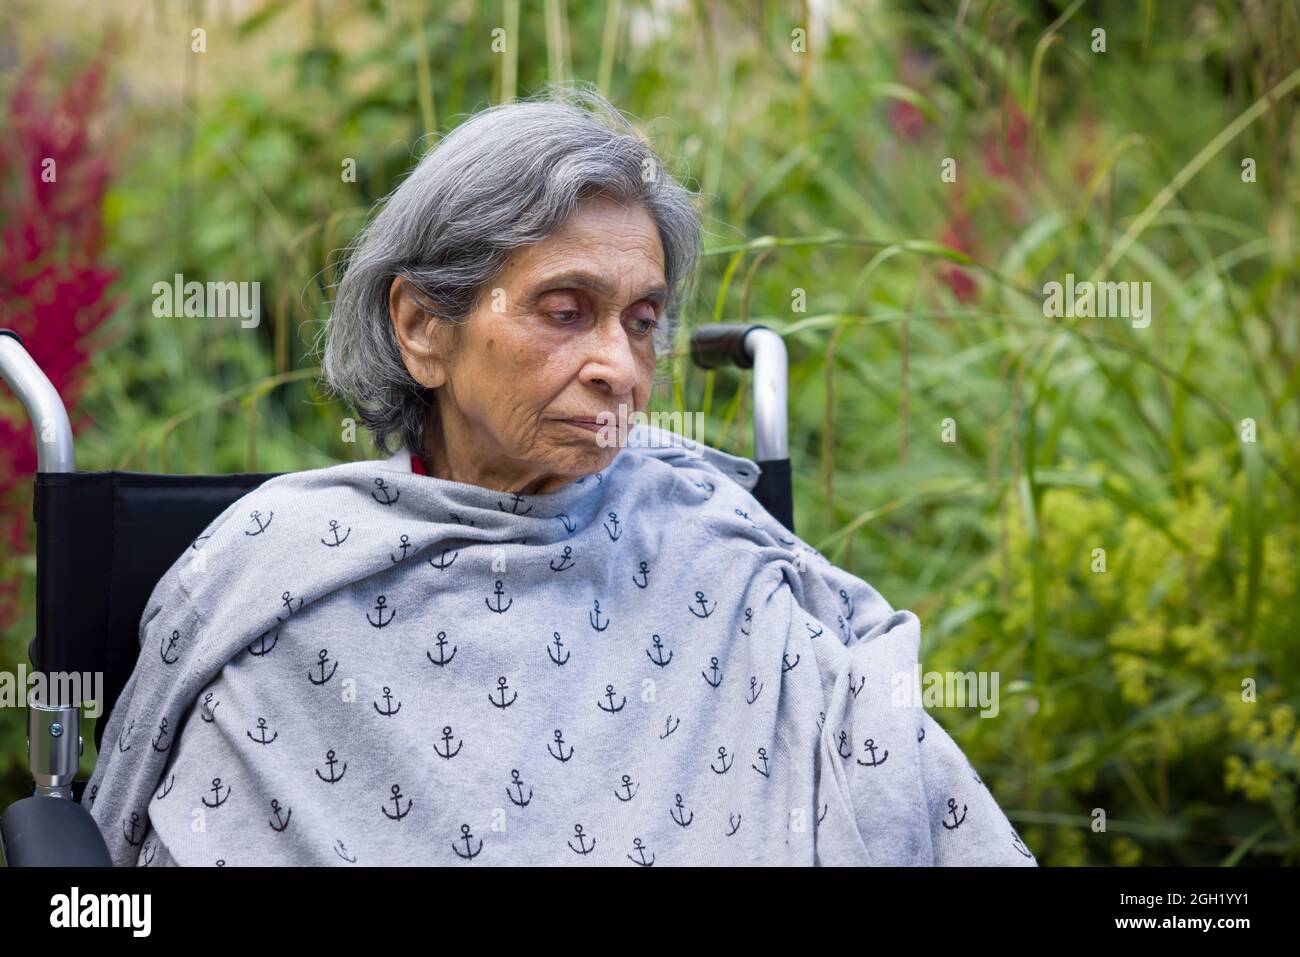 Vecchia donna indiana seduta su una sedia a rotelle in un giardino del Regno Unito, che guarda triste o depresso. Raffigura la salute mentale degli anziani, la depressione e la malattia nella vecchiaia Foto Stock